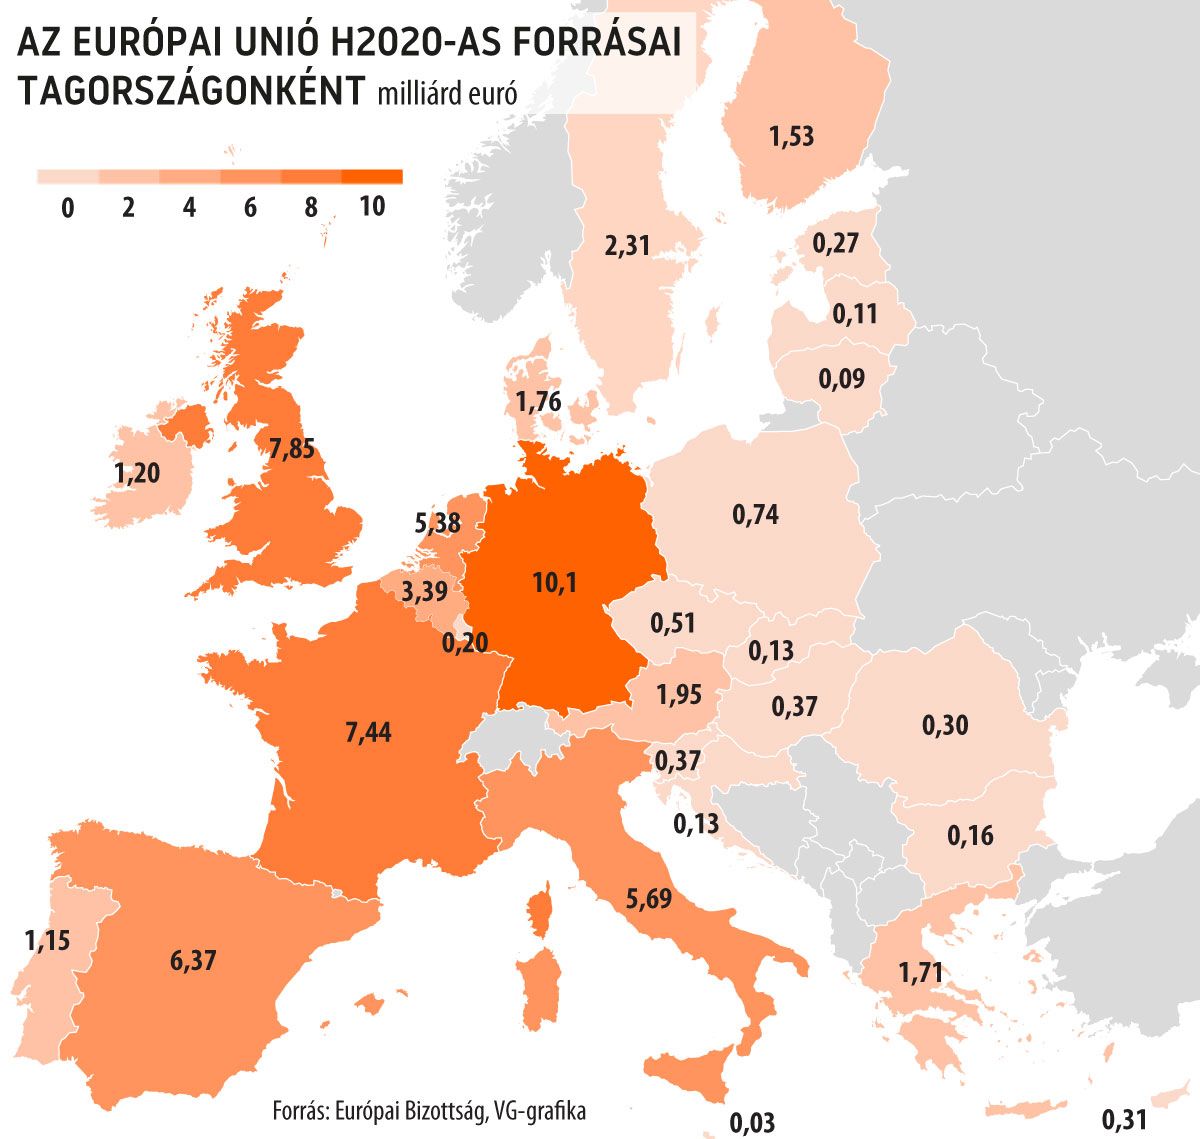 Az Európai Unió H2020-as forrásai tagországonként
